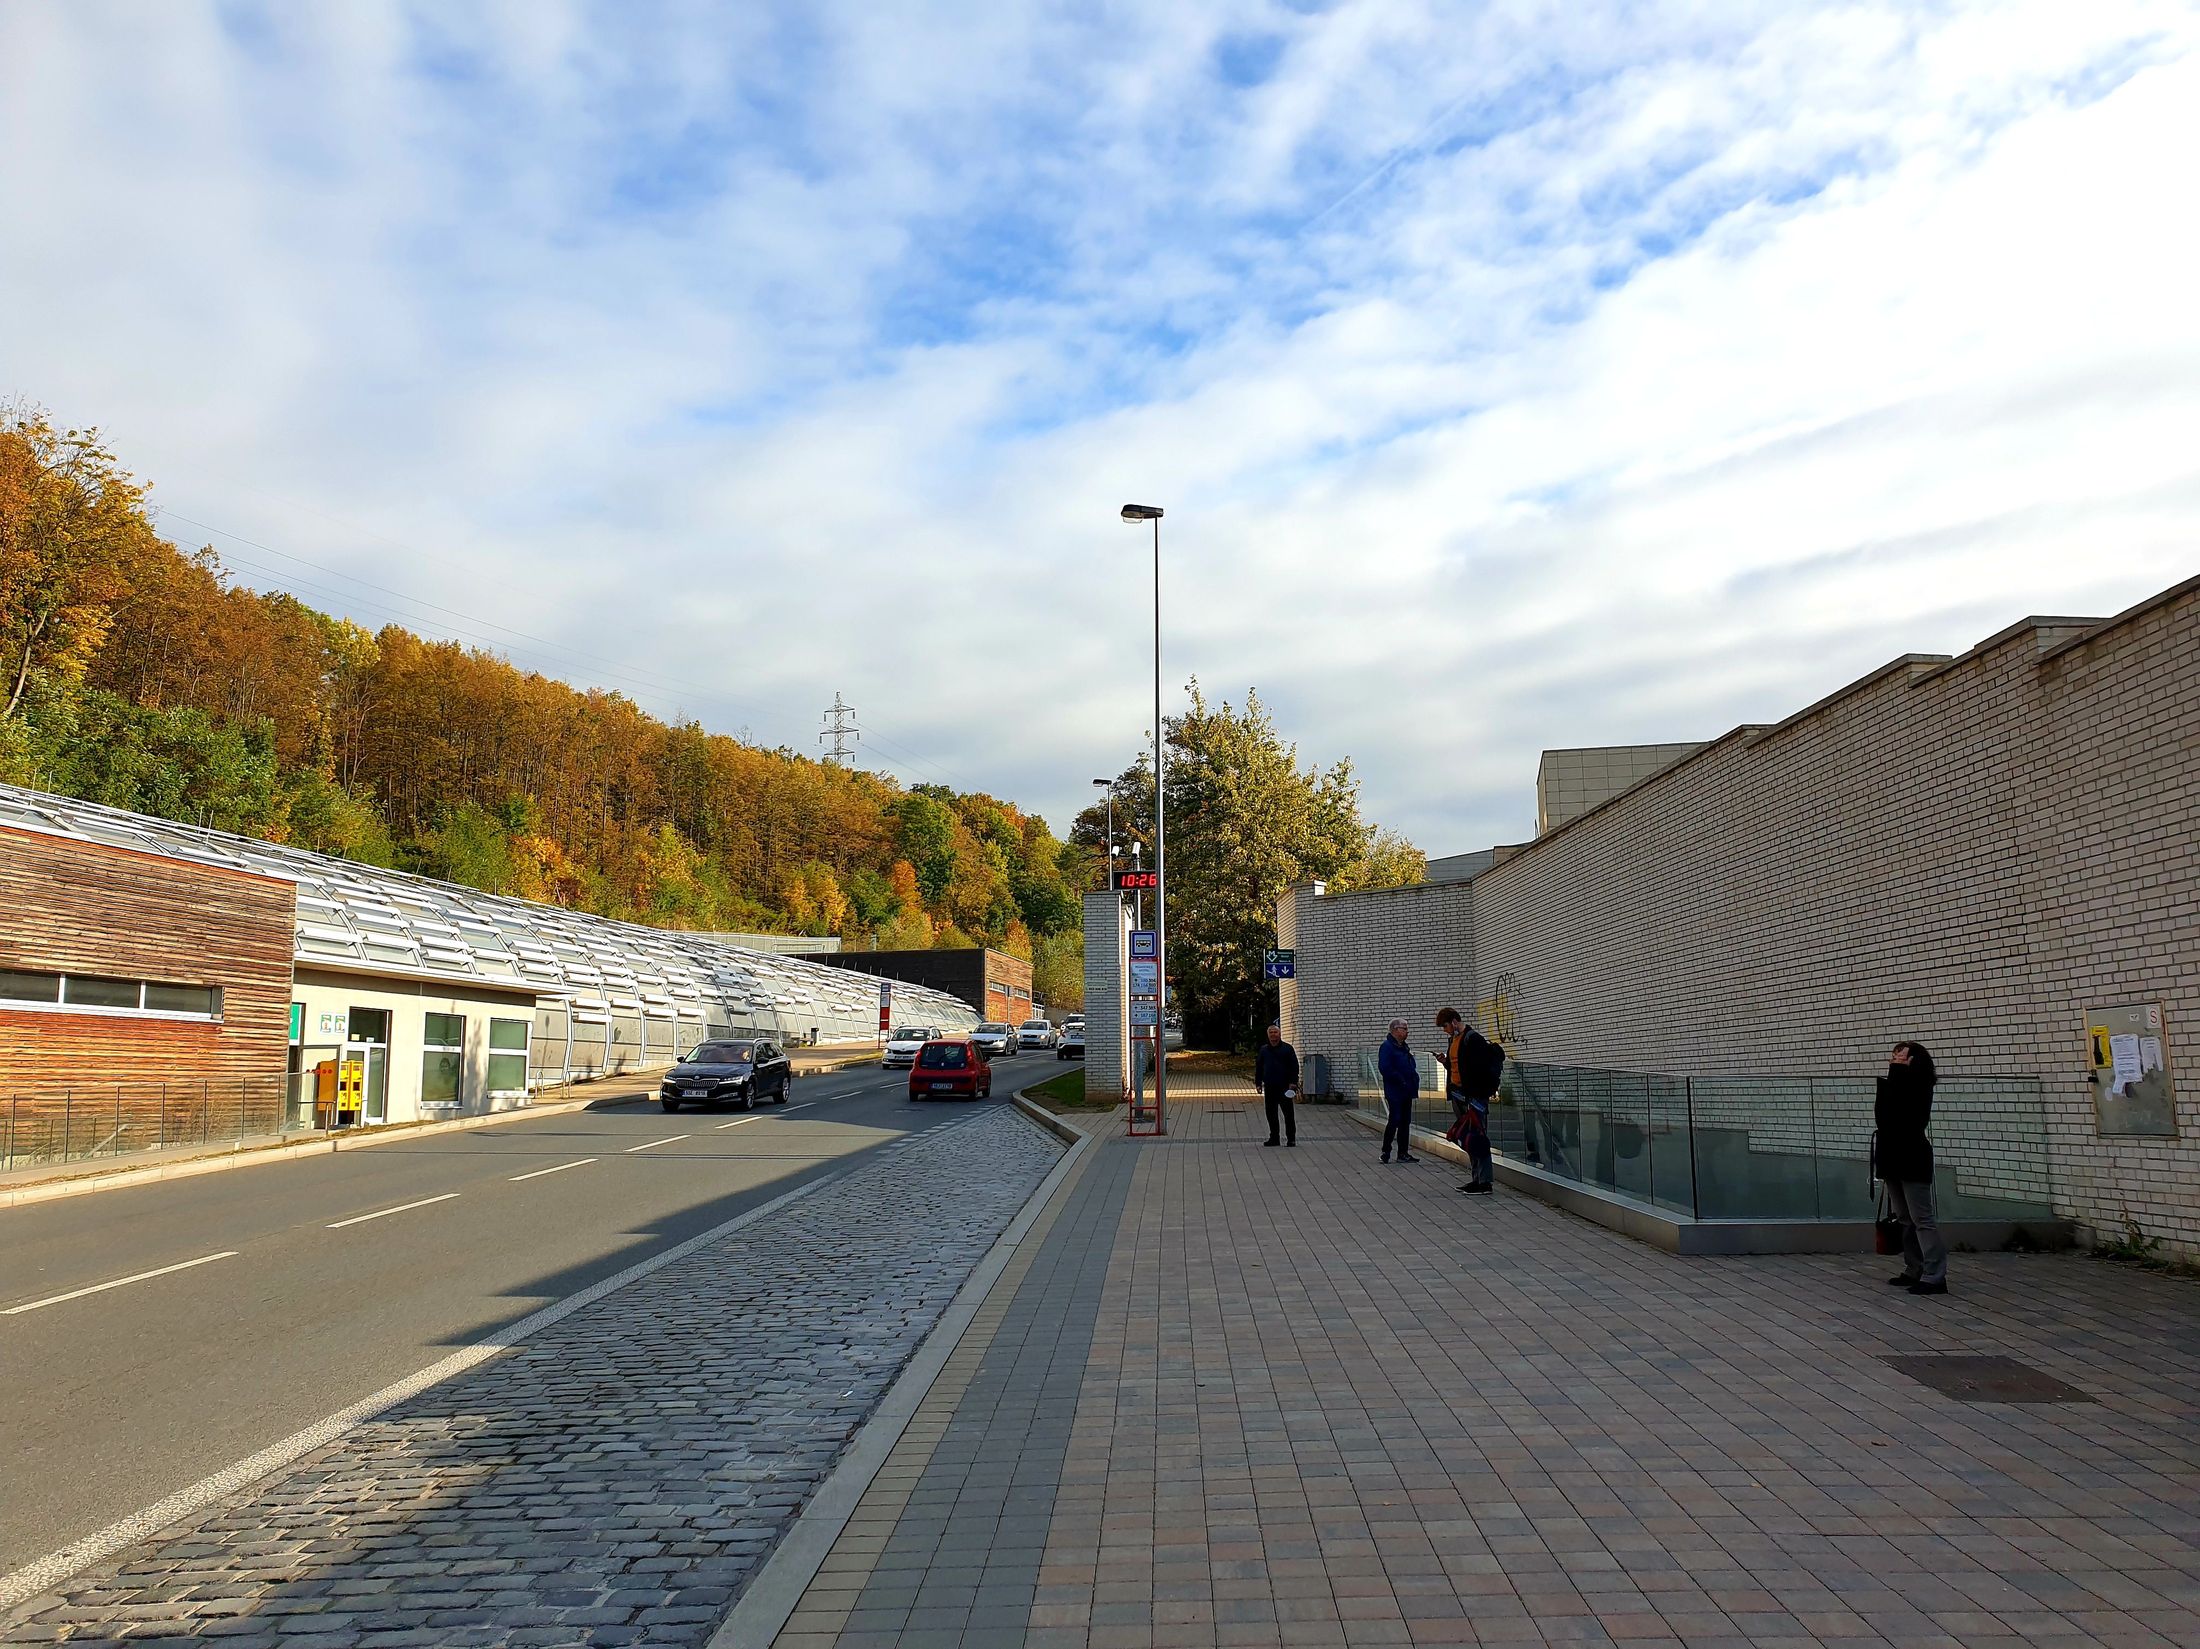 Vlevo stanice metra Nemocnice Motol - vchod z ulice, vpravo zastávka autobusu Nemocnice Motol, vchod do podchodu a protihluková stěna